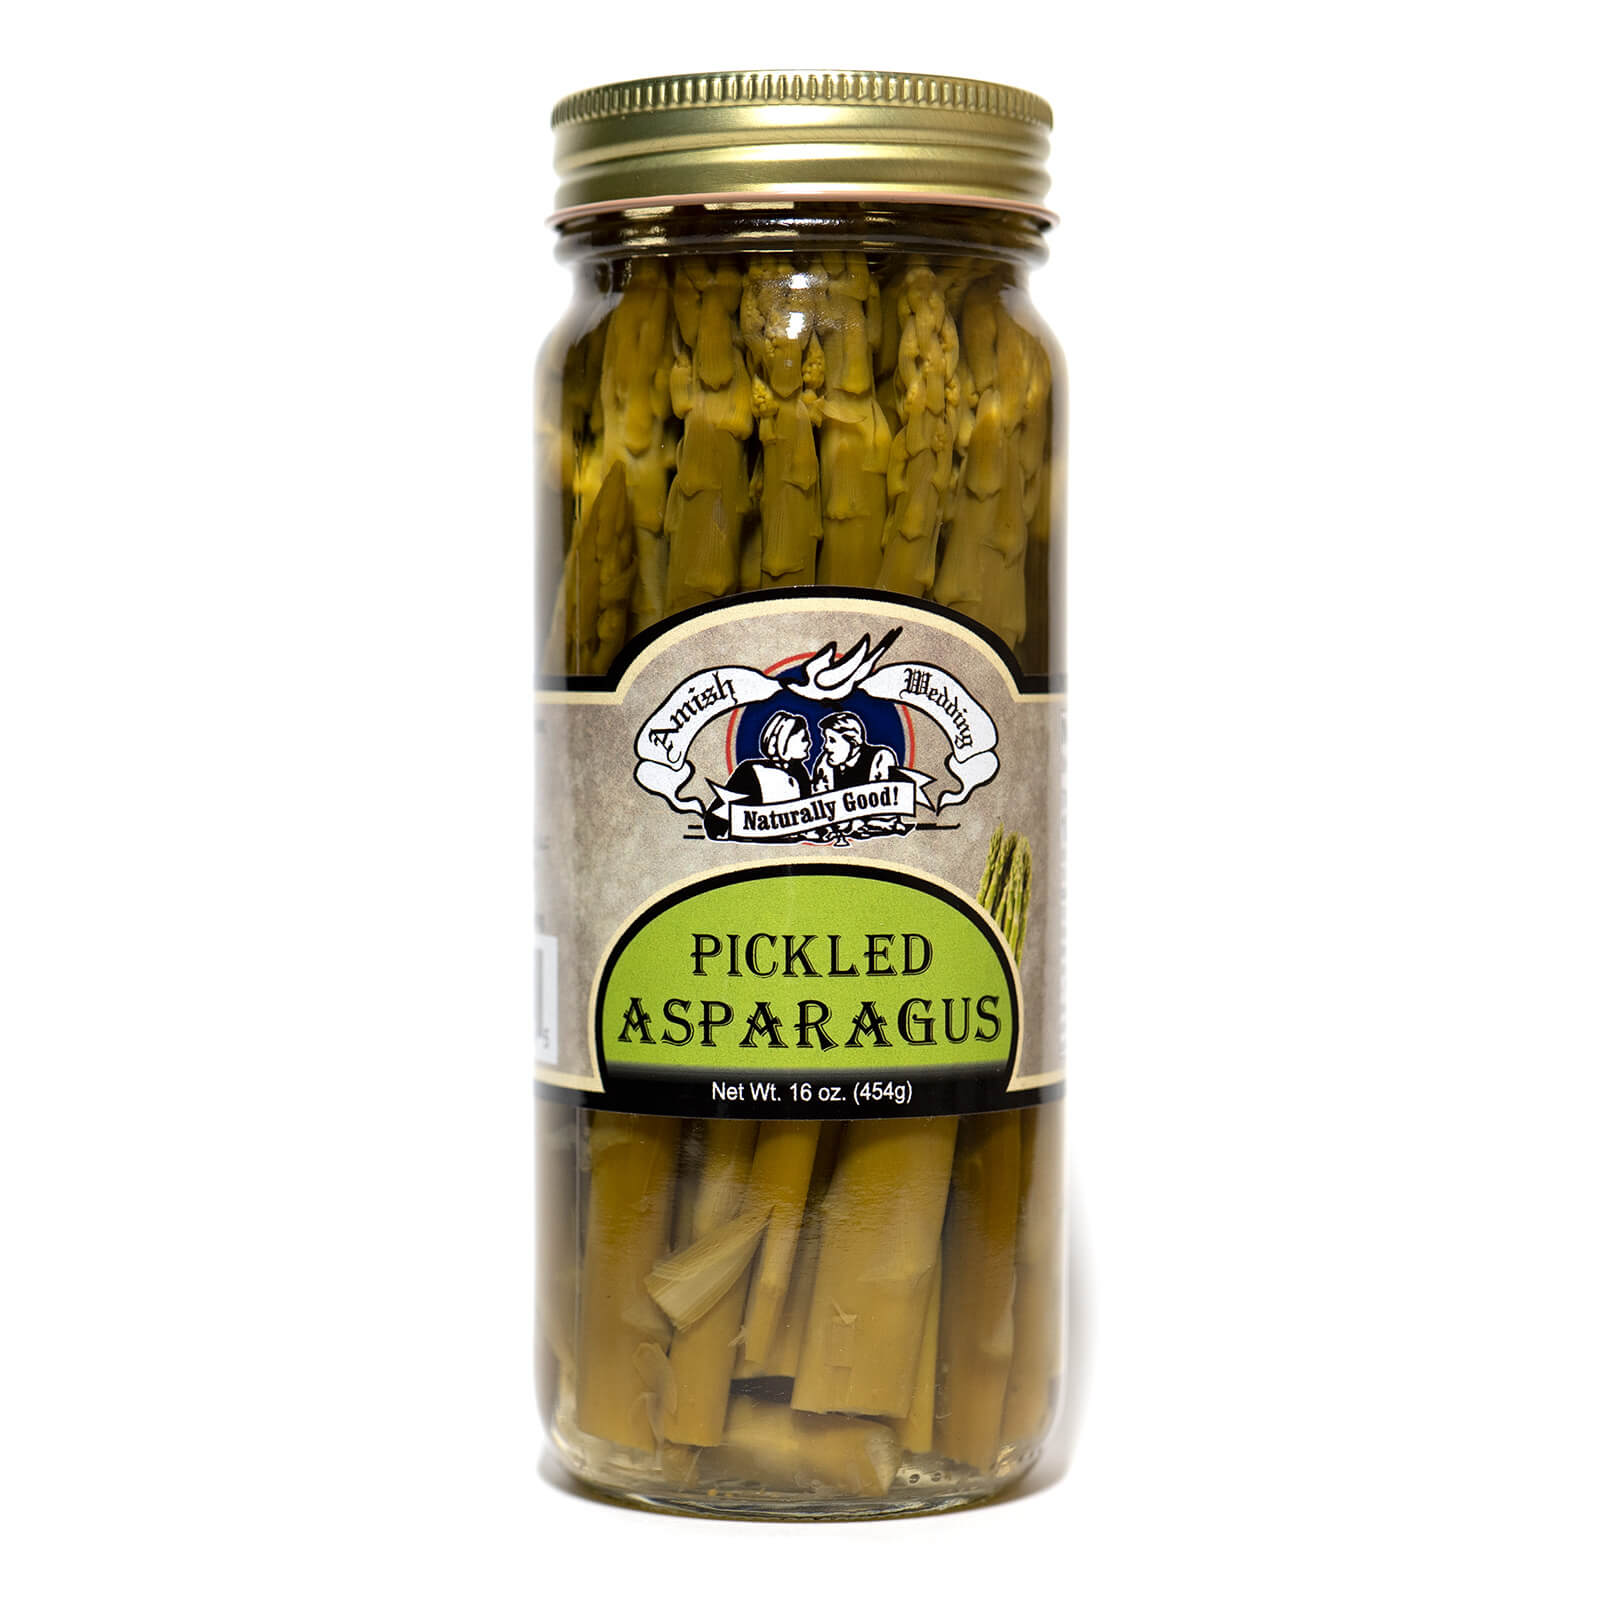 Pickled Asparagus - Amish Wedding - Single Jar - Front Label